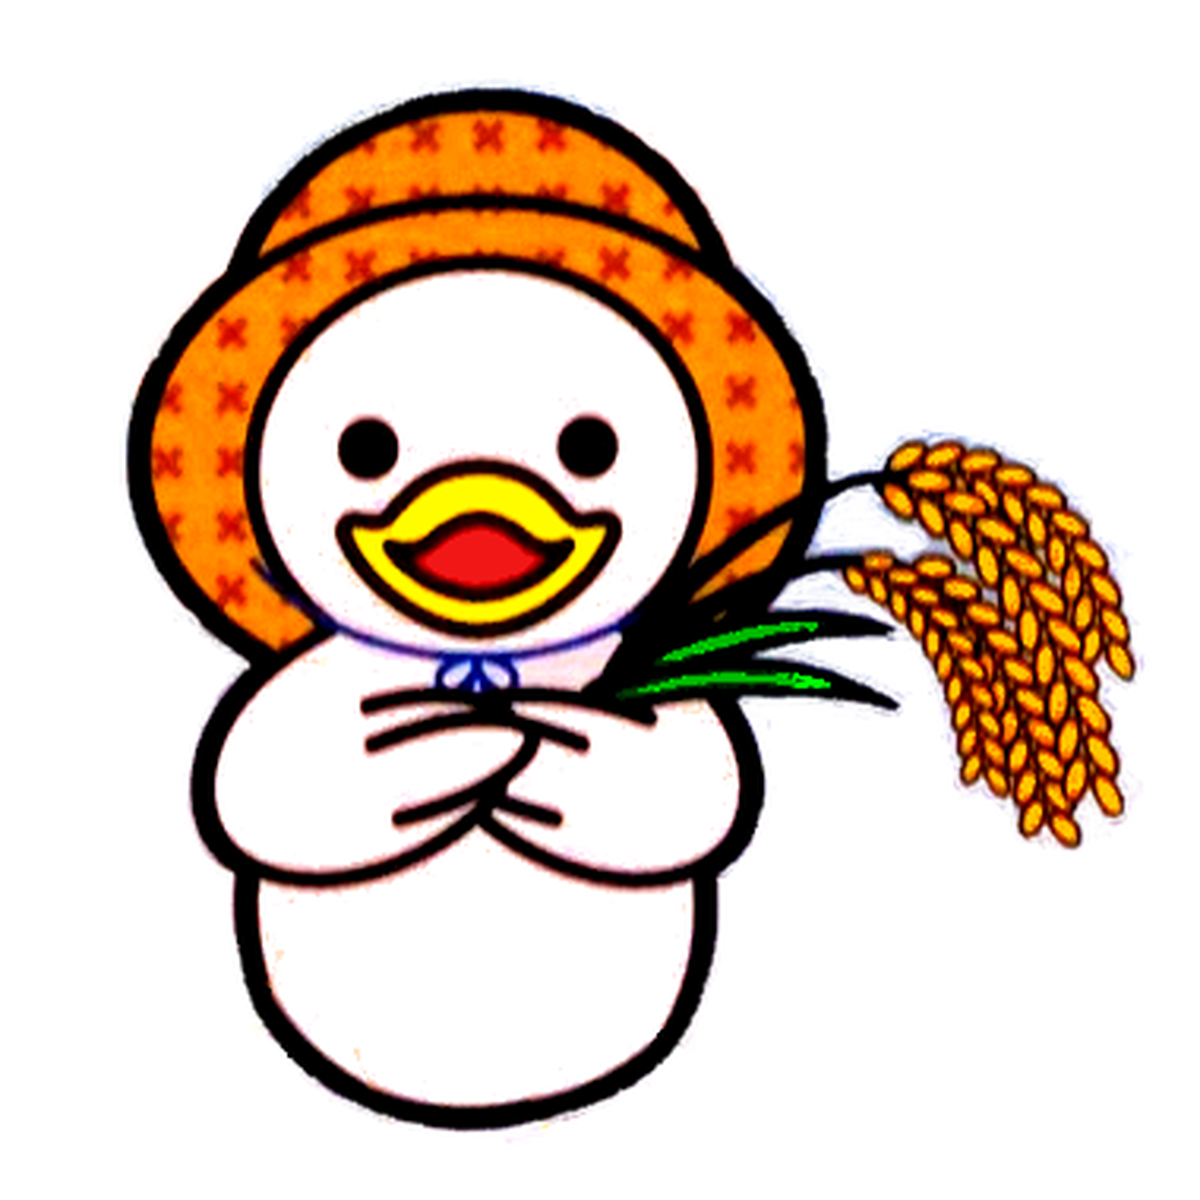 令和2年産 福島県有機栽培米コシヒカリ あひる 5kg 新妻有機農園